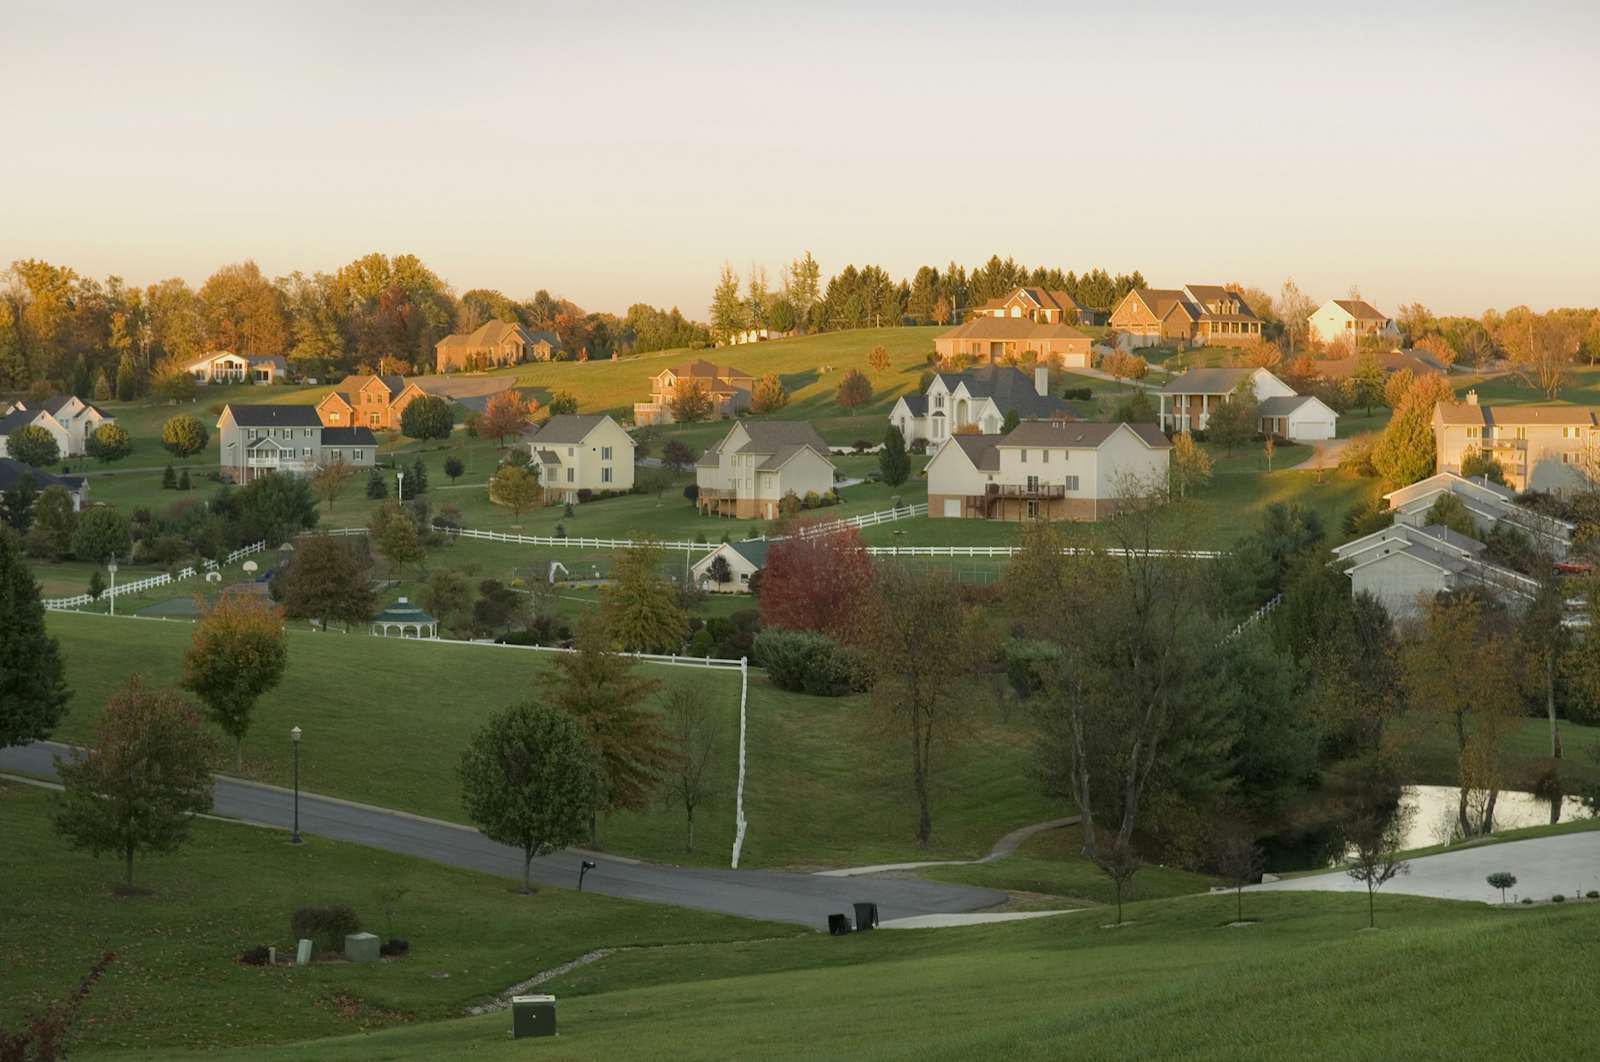 Residential neighborhood near Morgantown, West Virginia